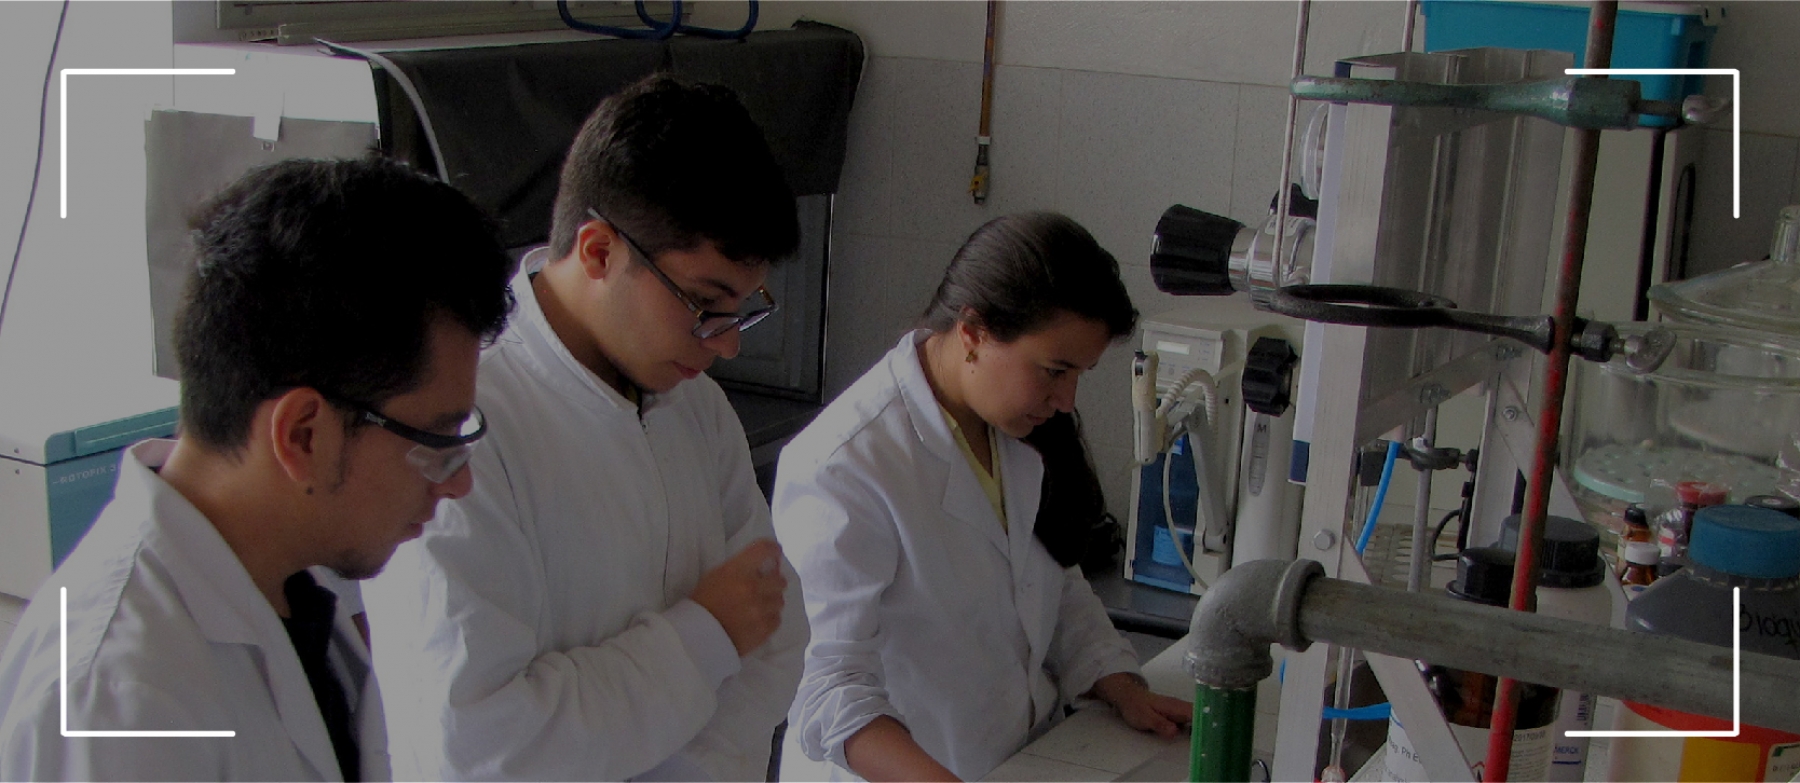 El programa de Ingeniería Química en Bogotá: tradición y excelencia con el sello Universidad Nacional